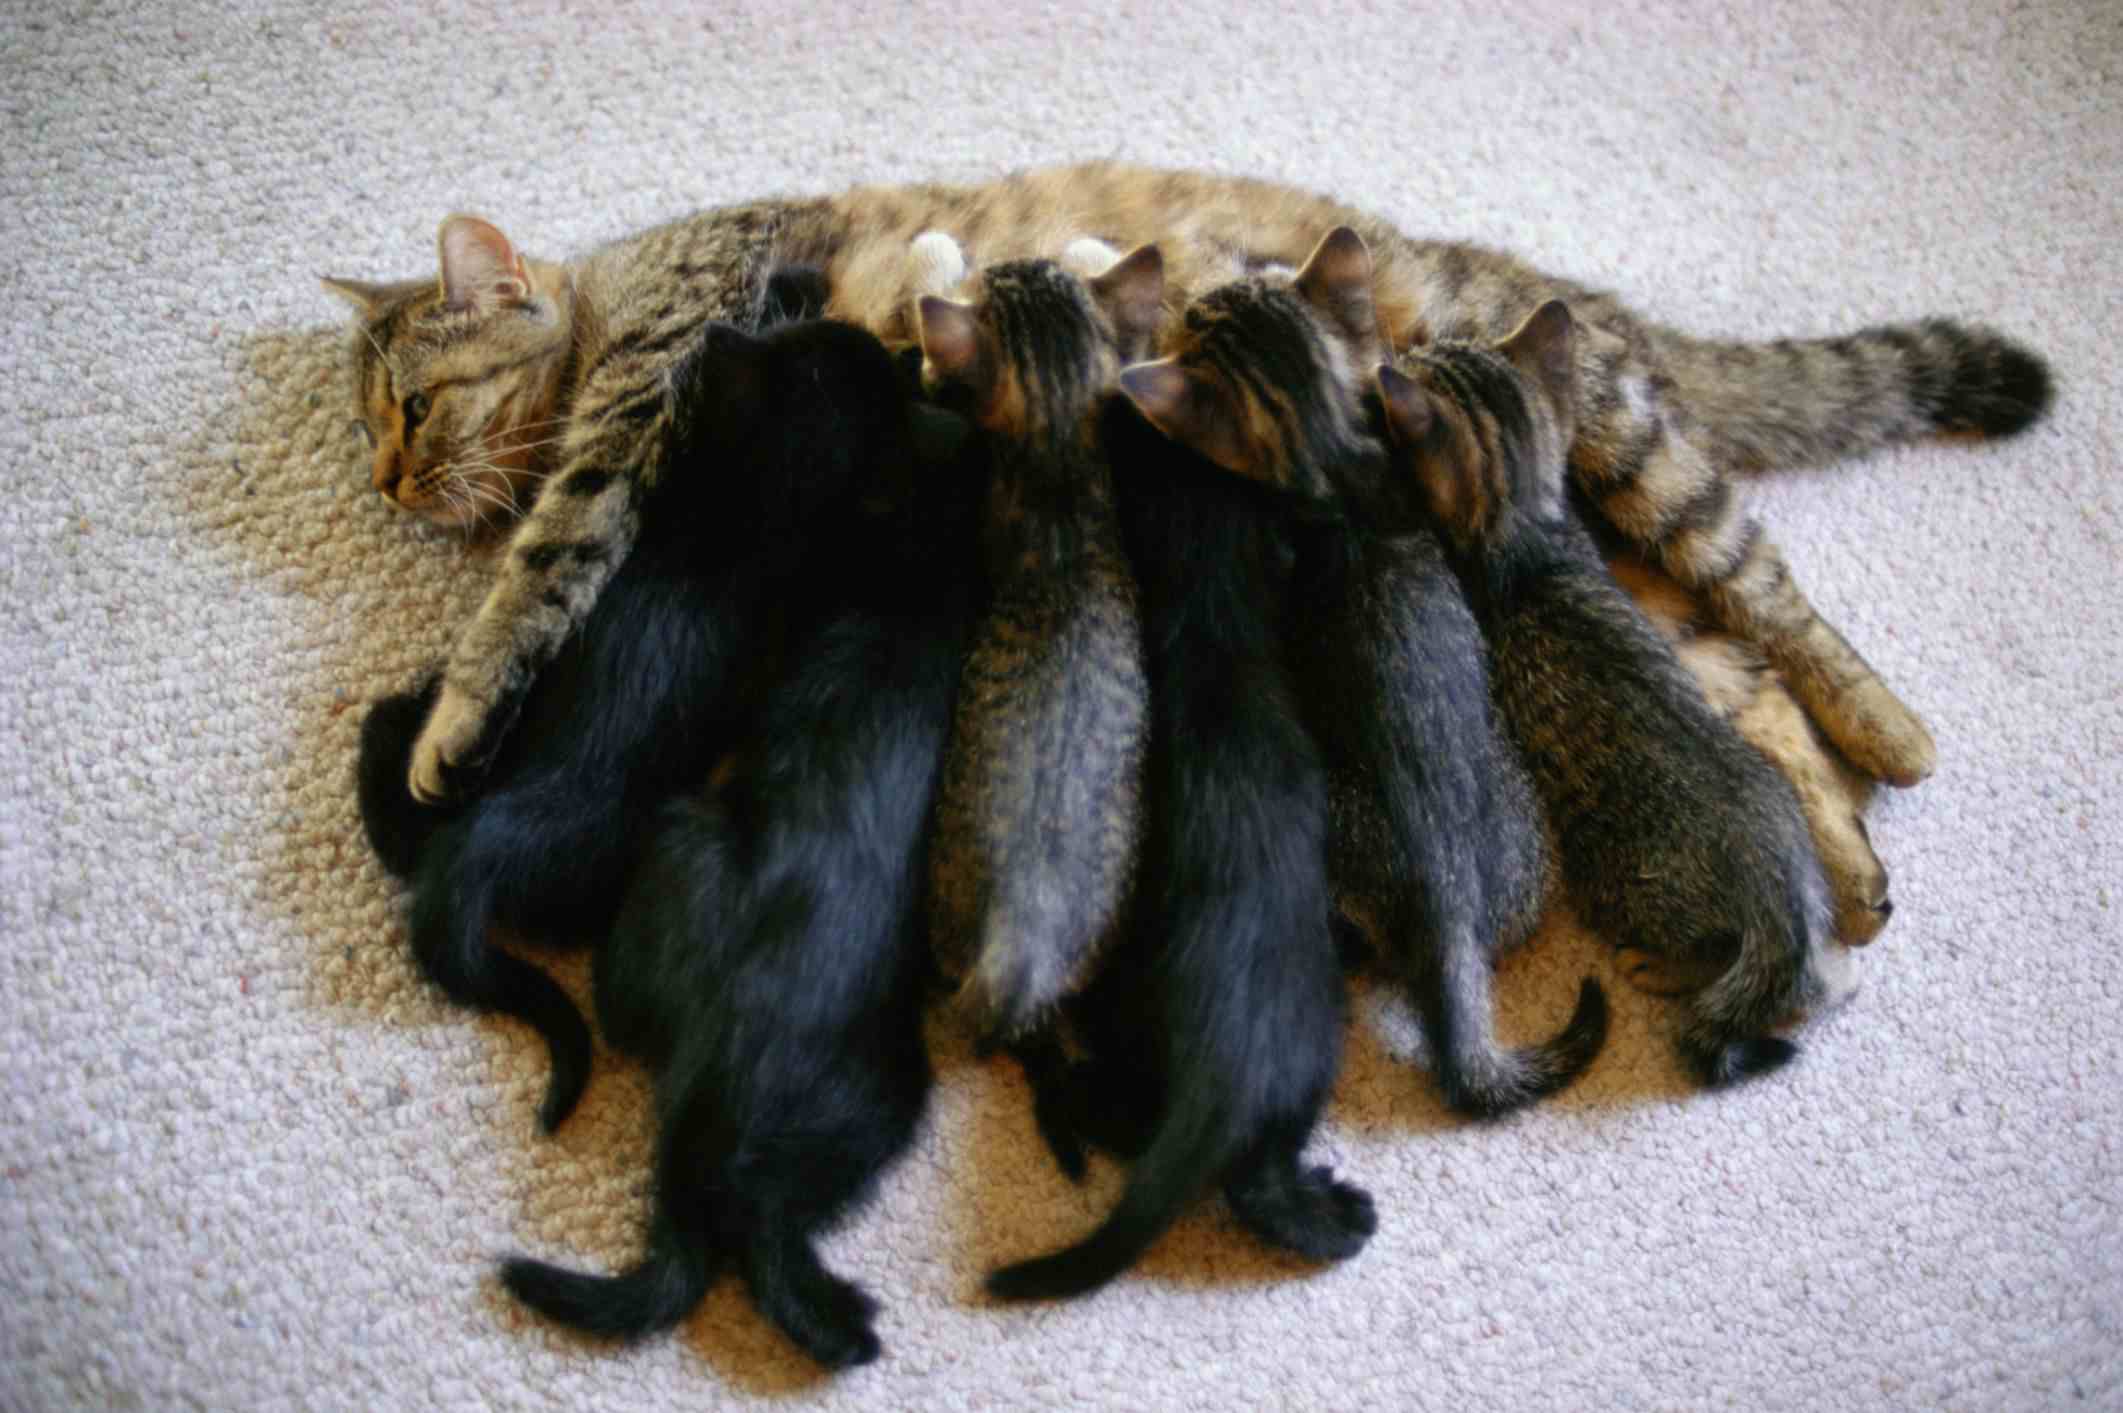 Kittens nursing